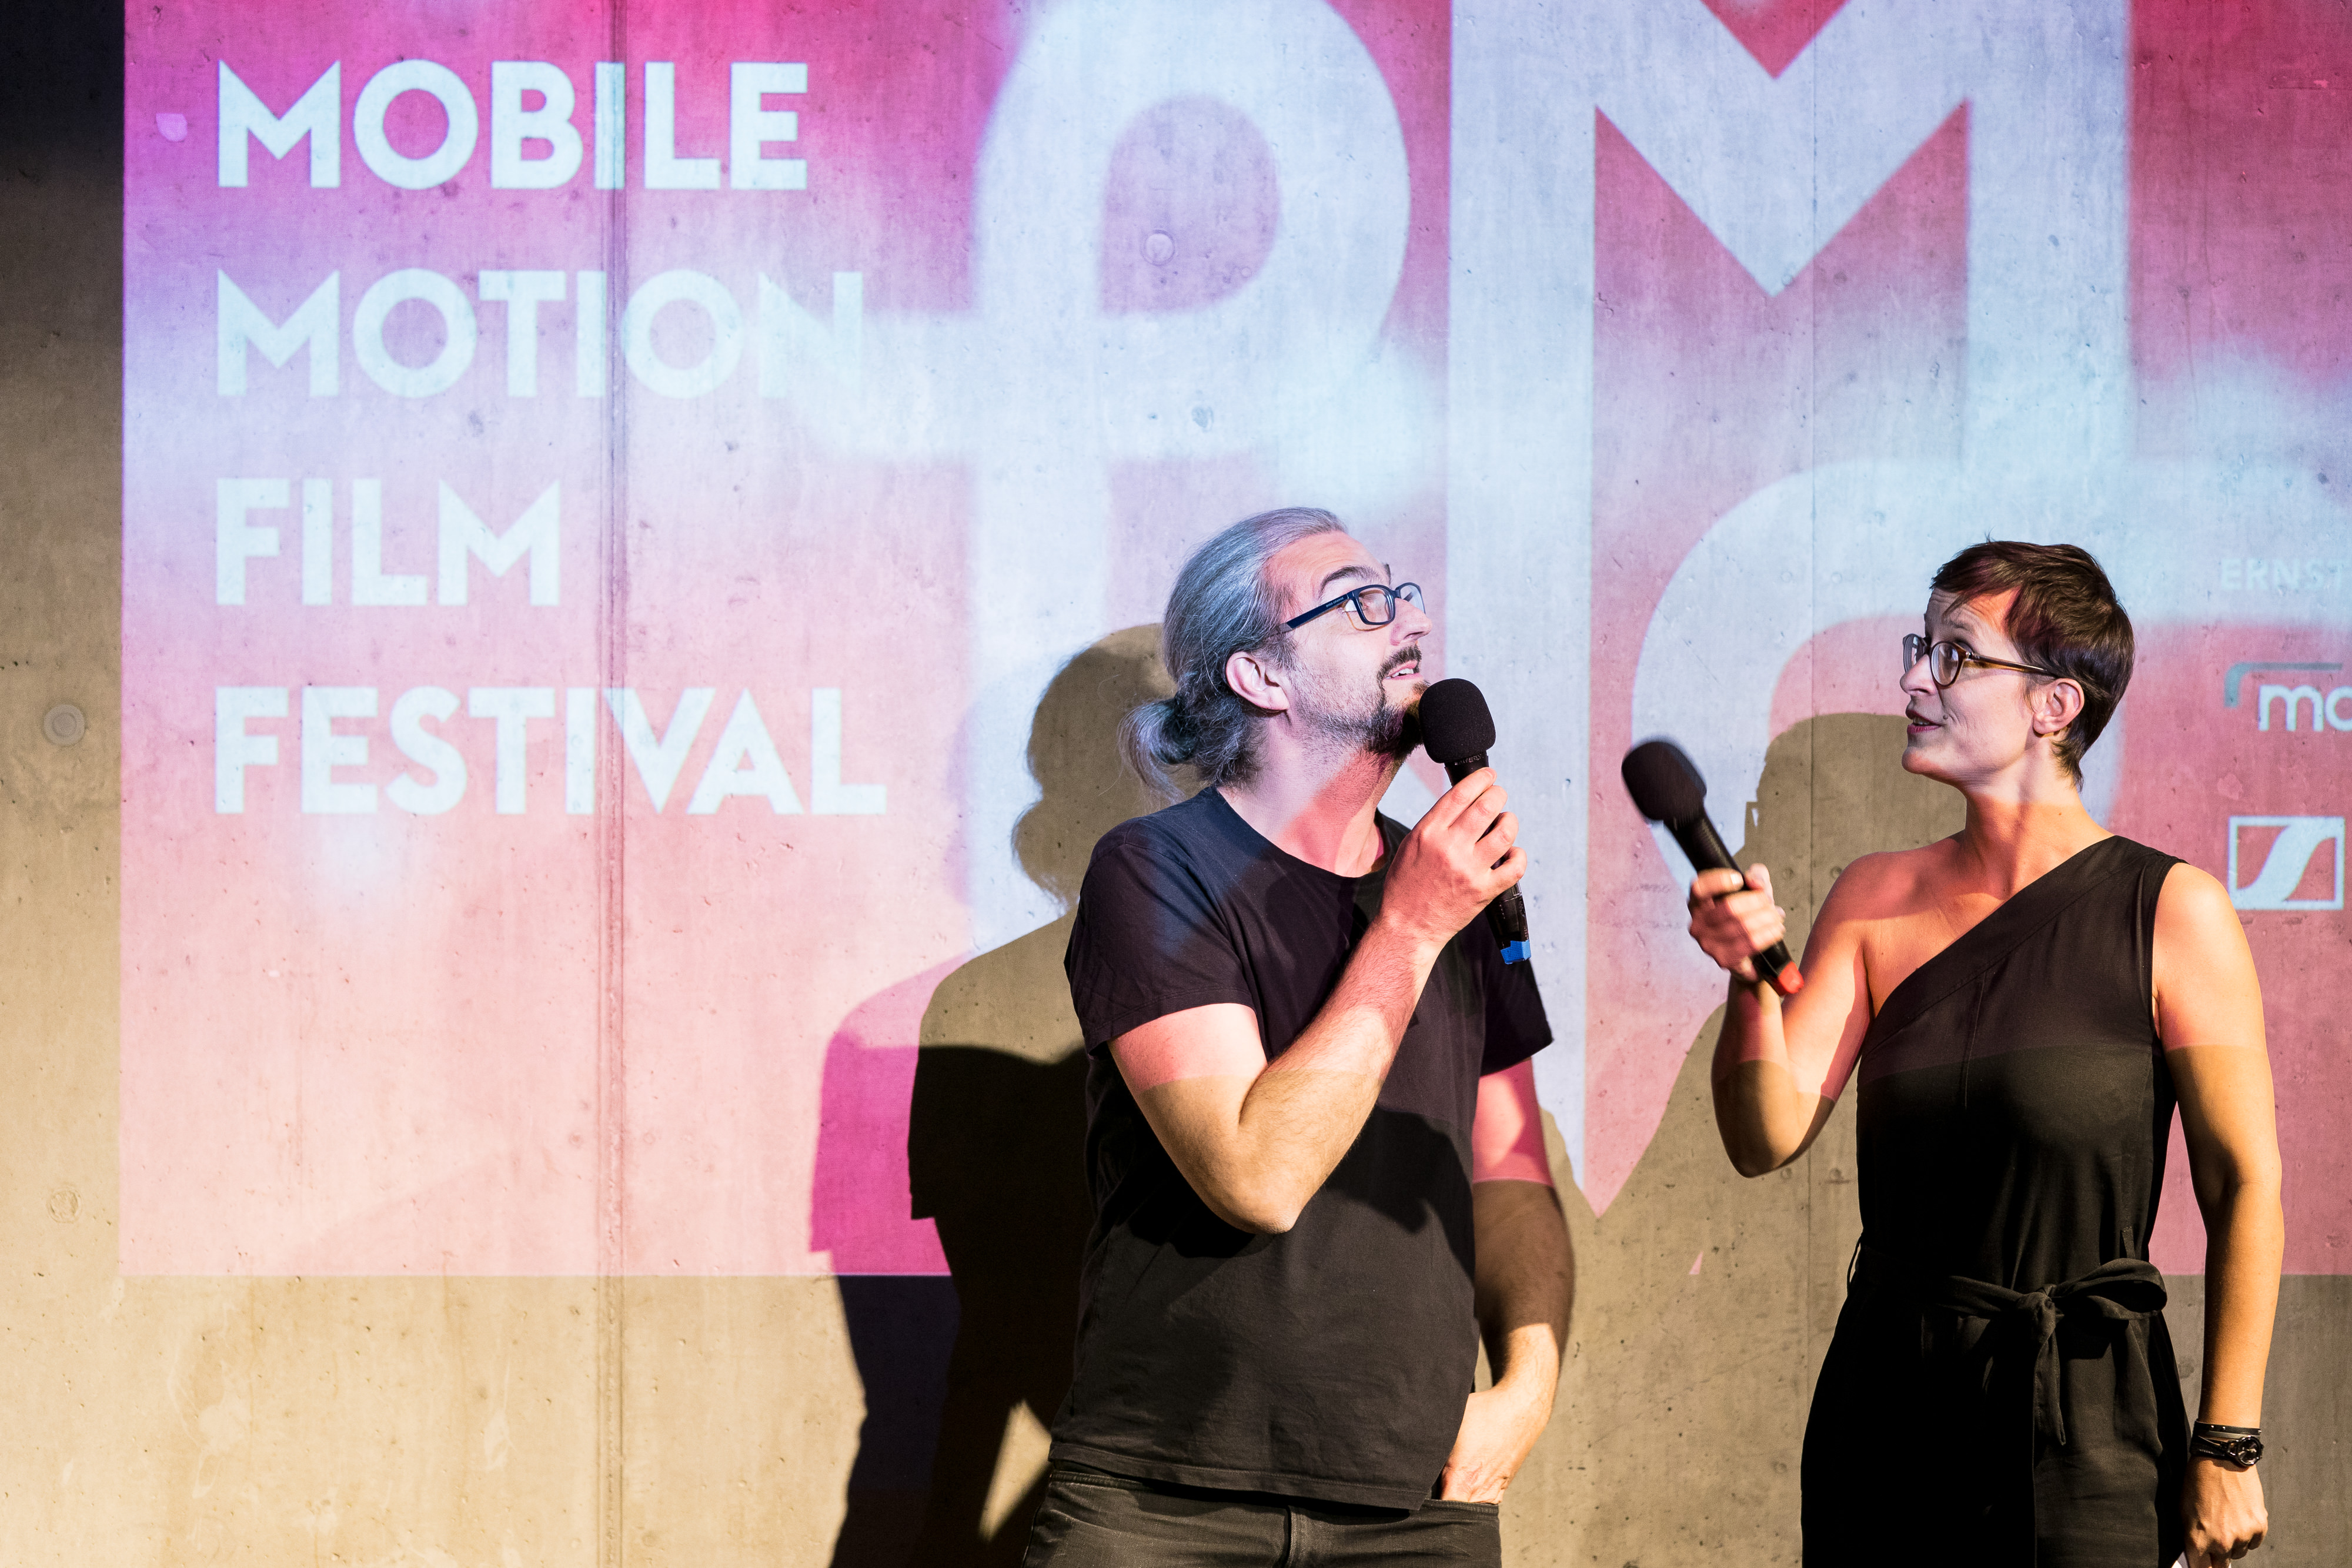 Mobile Motion Film Festival 2019